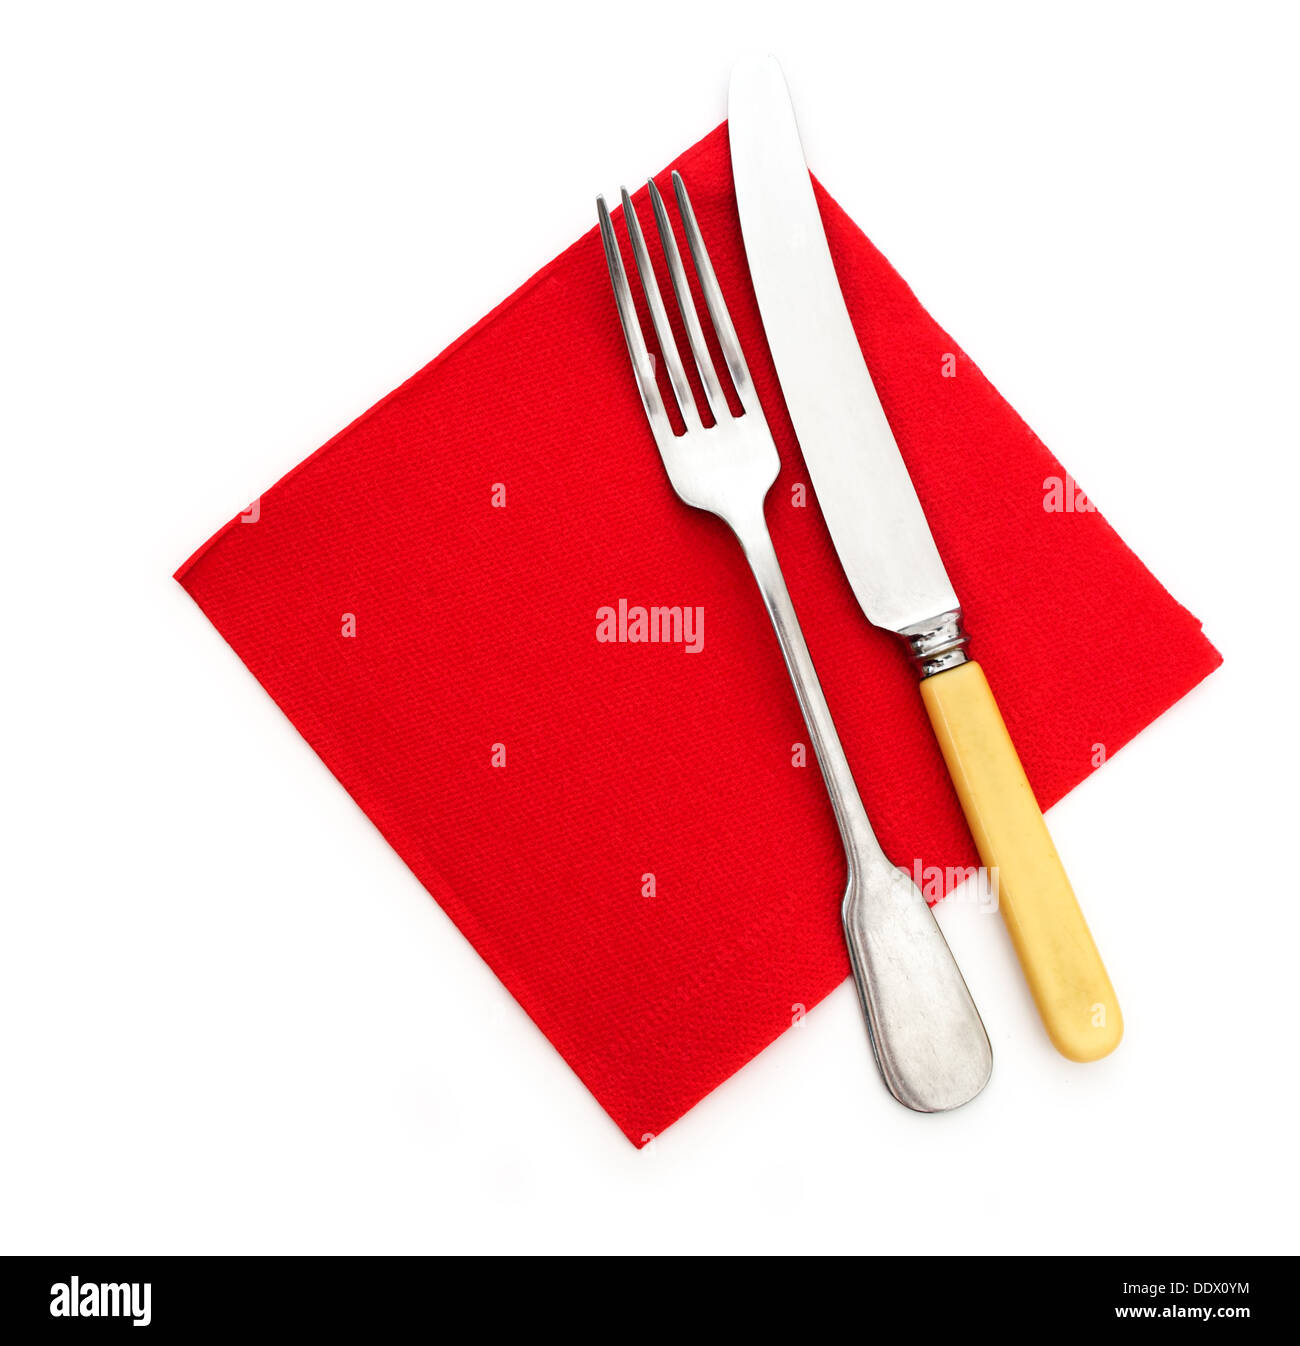 Bereit für das Abendessen - Messer Gabel und rotes Papier Serviette, Servietten Stockfoto